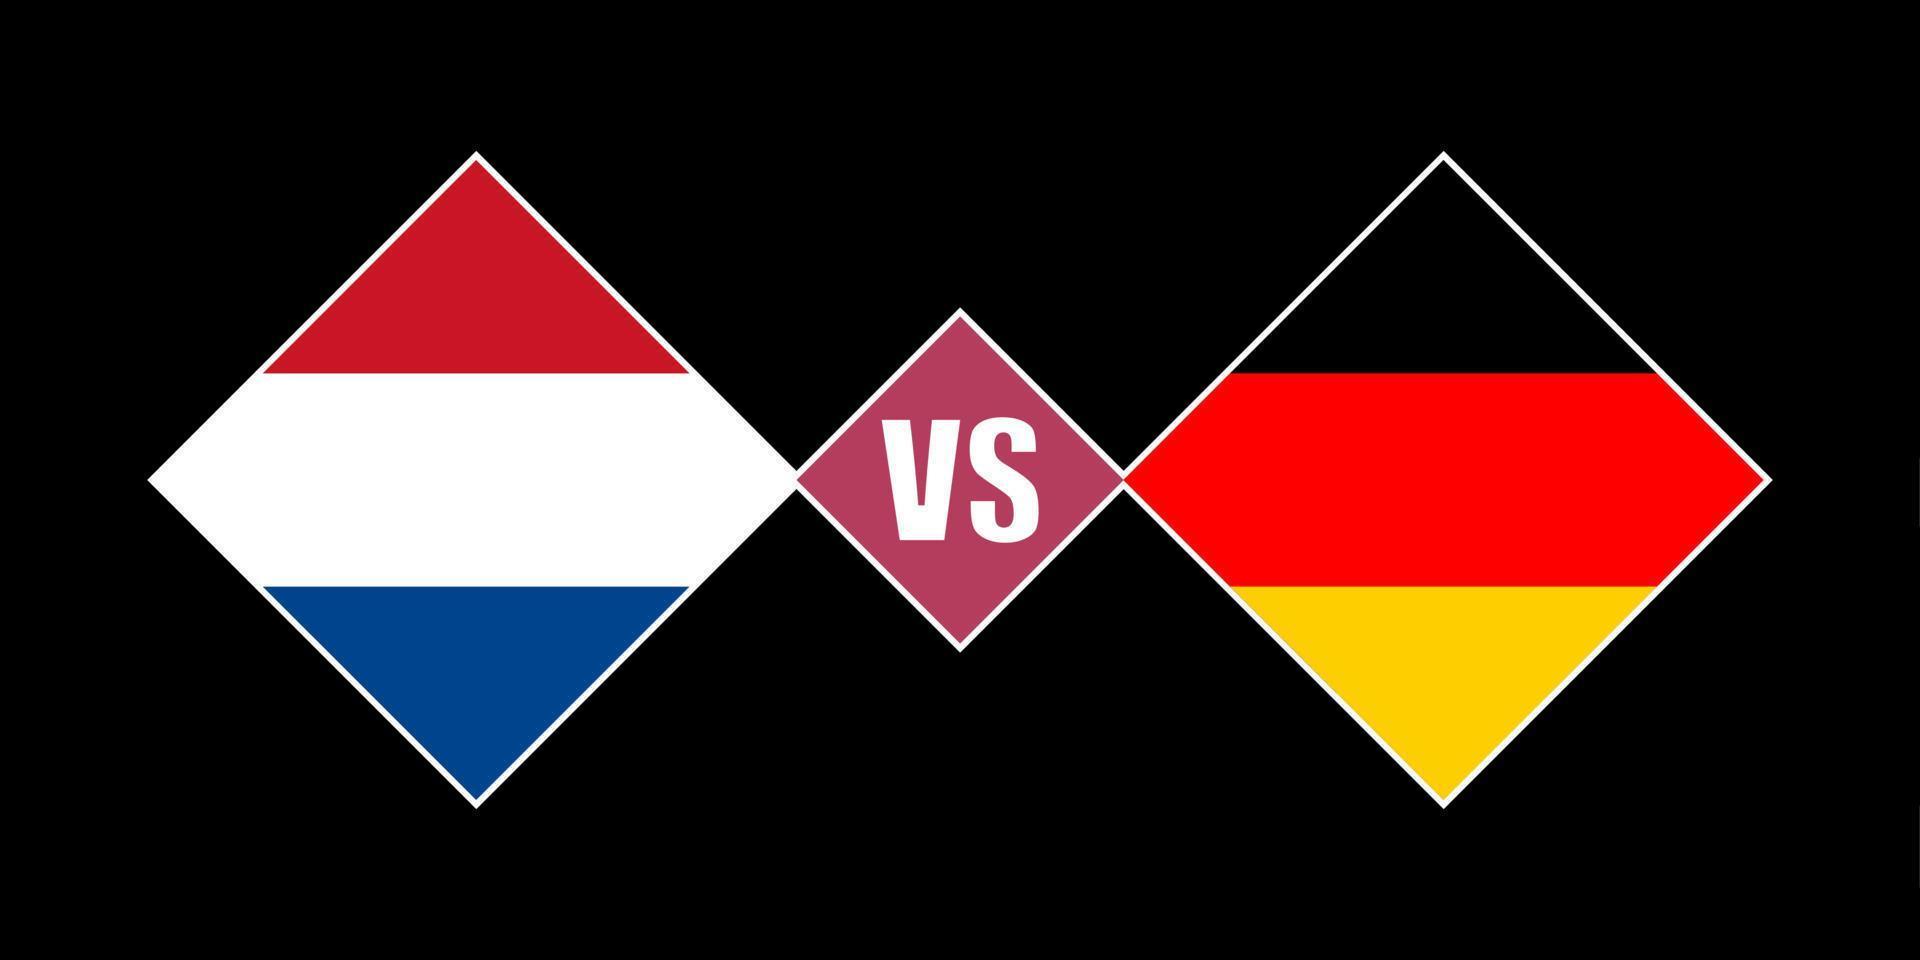 Holanda vs Alemanha conceito de bandeira. ilustração vetorial. vetor